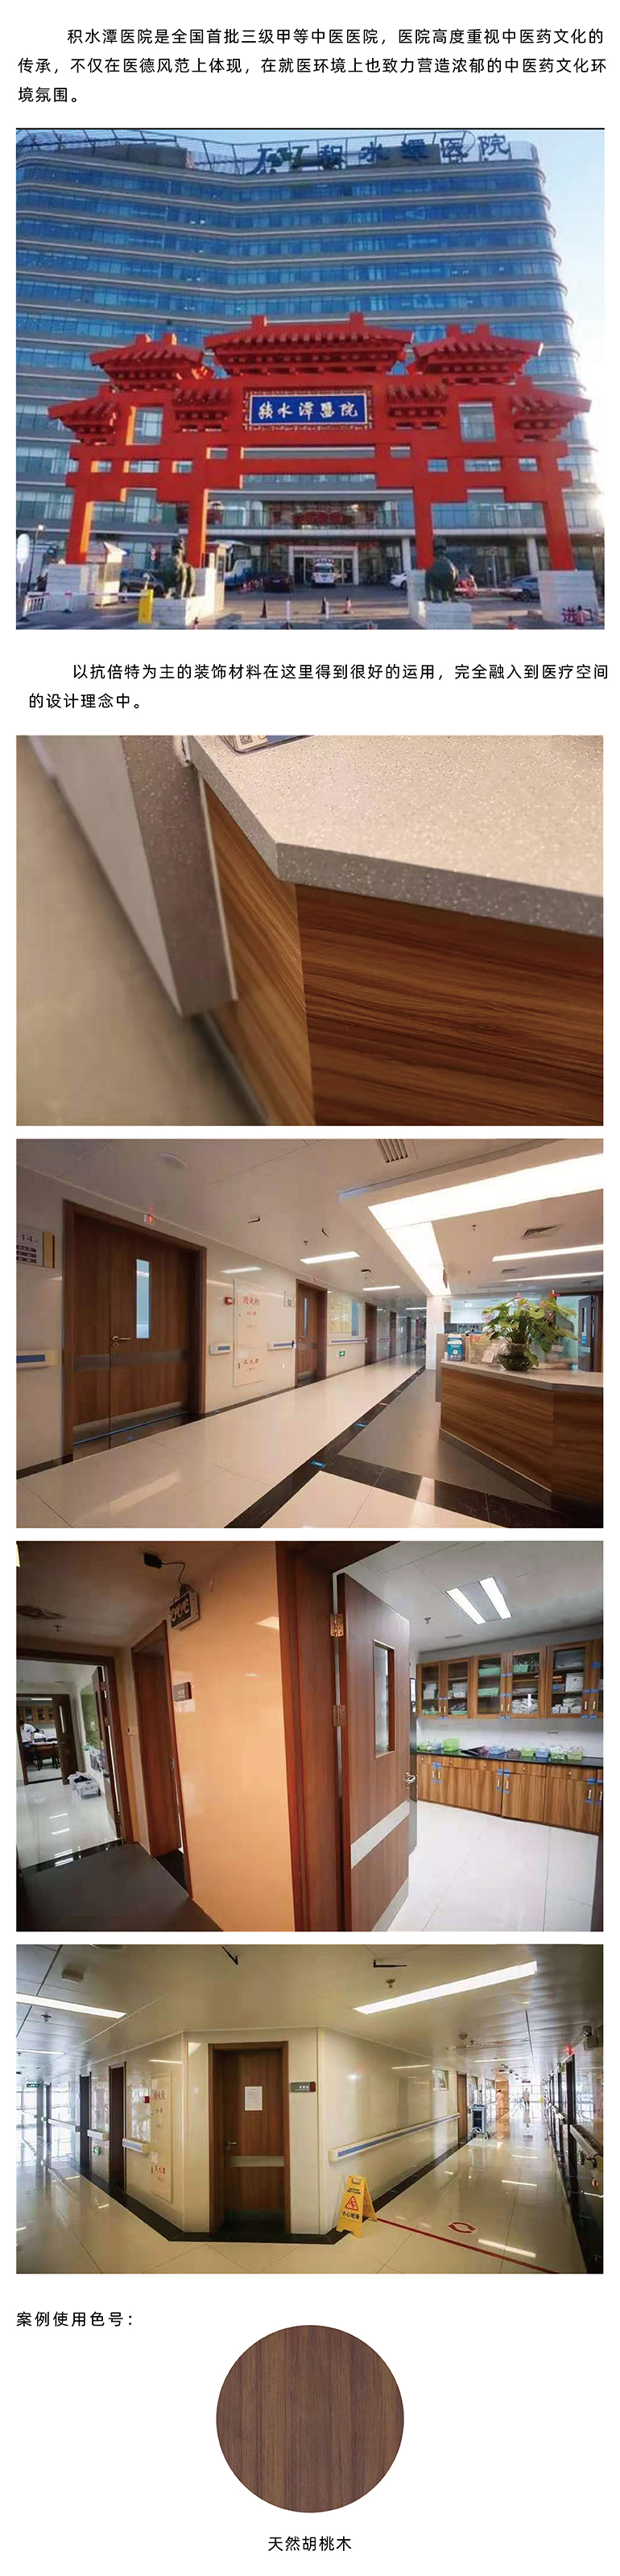 北京积水潭医院装饰墙板系统